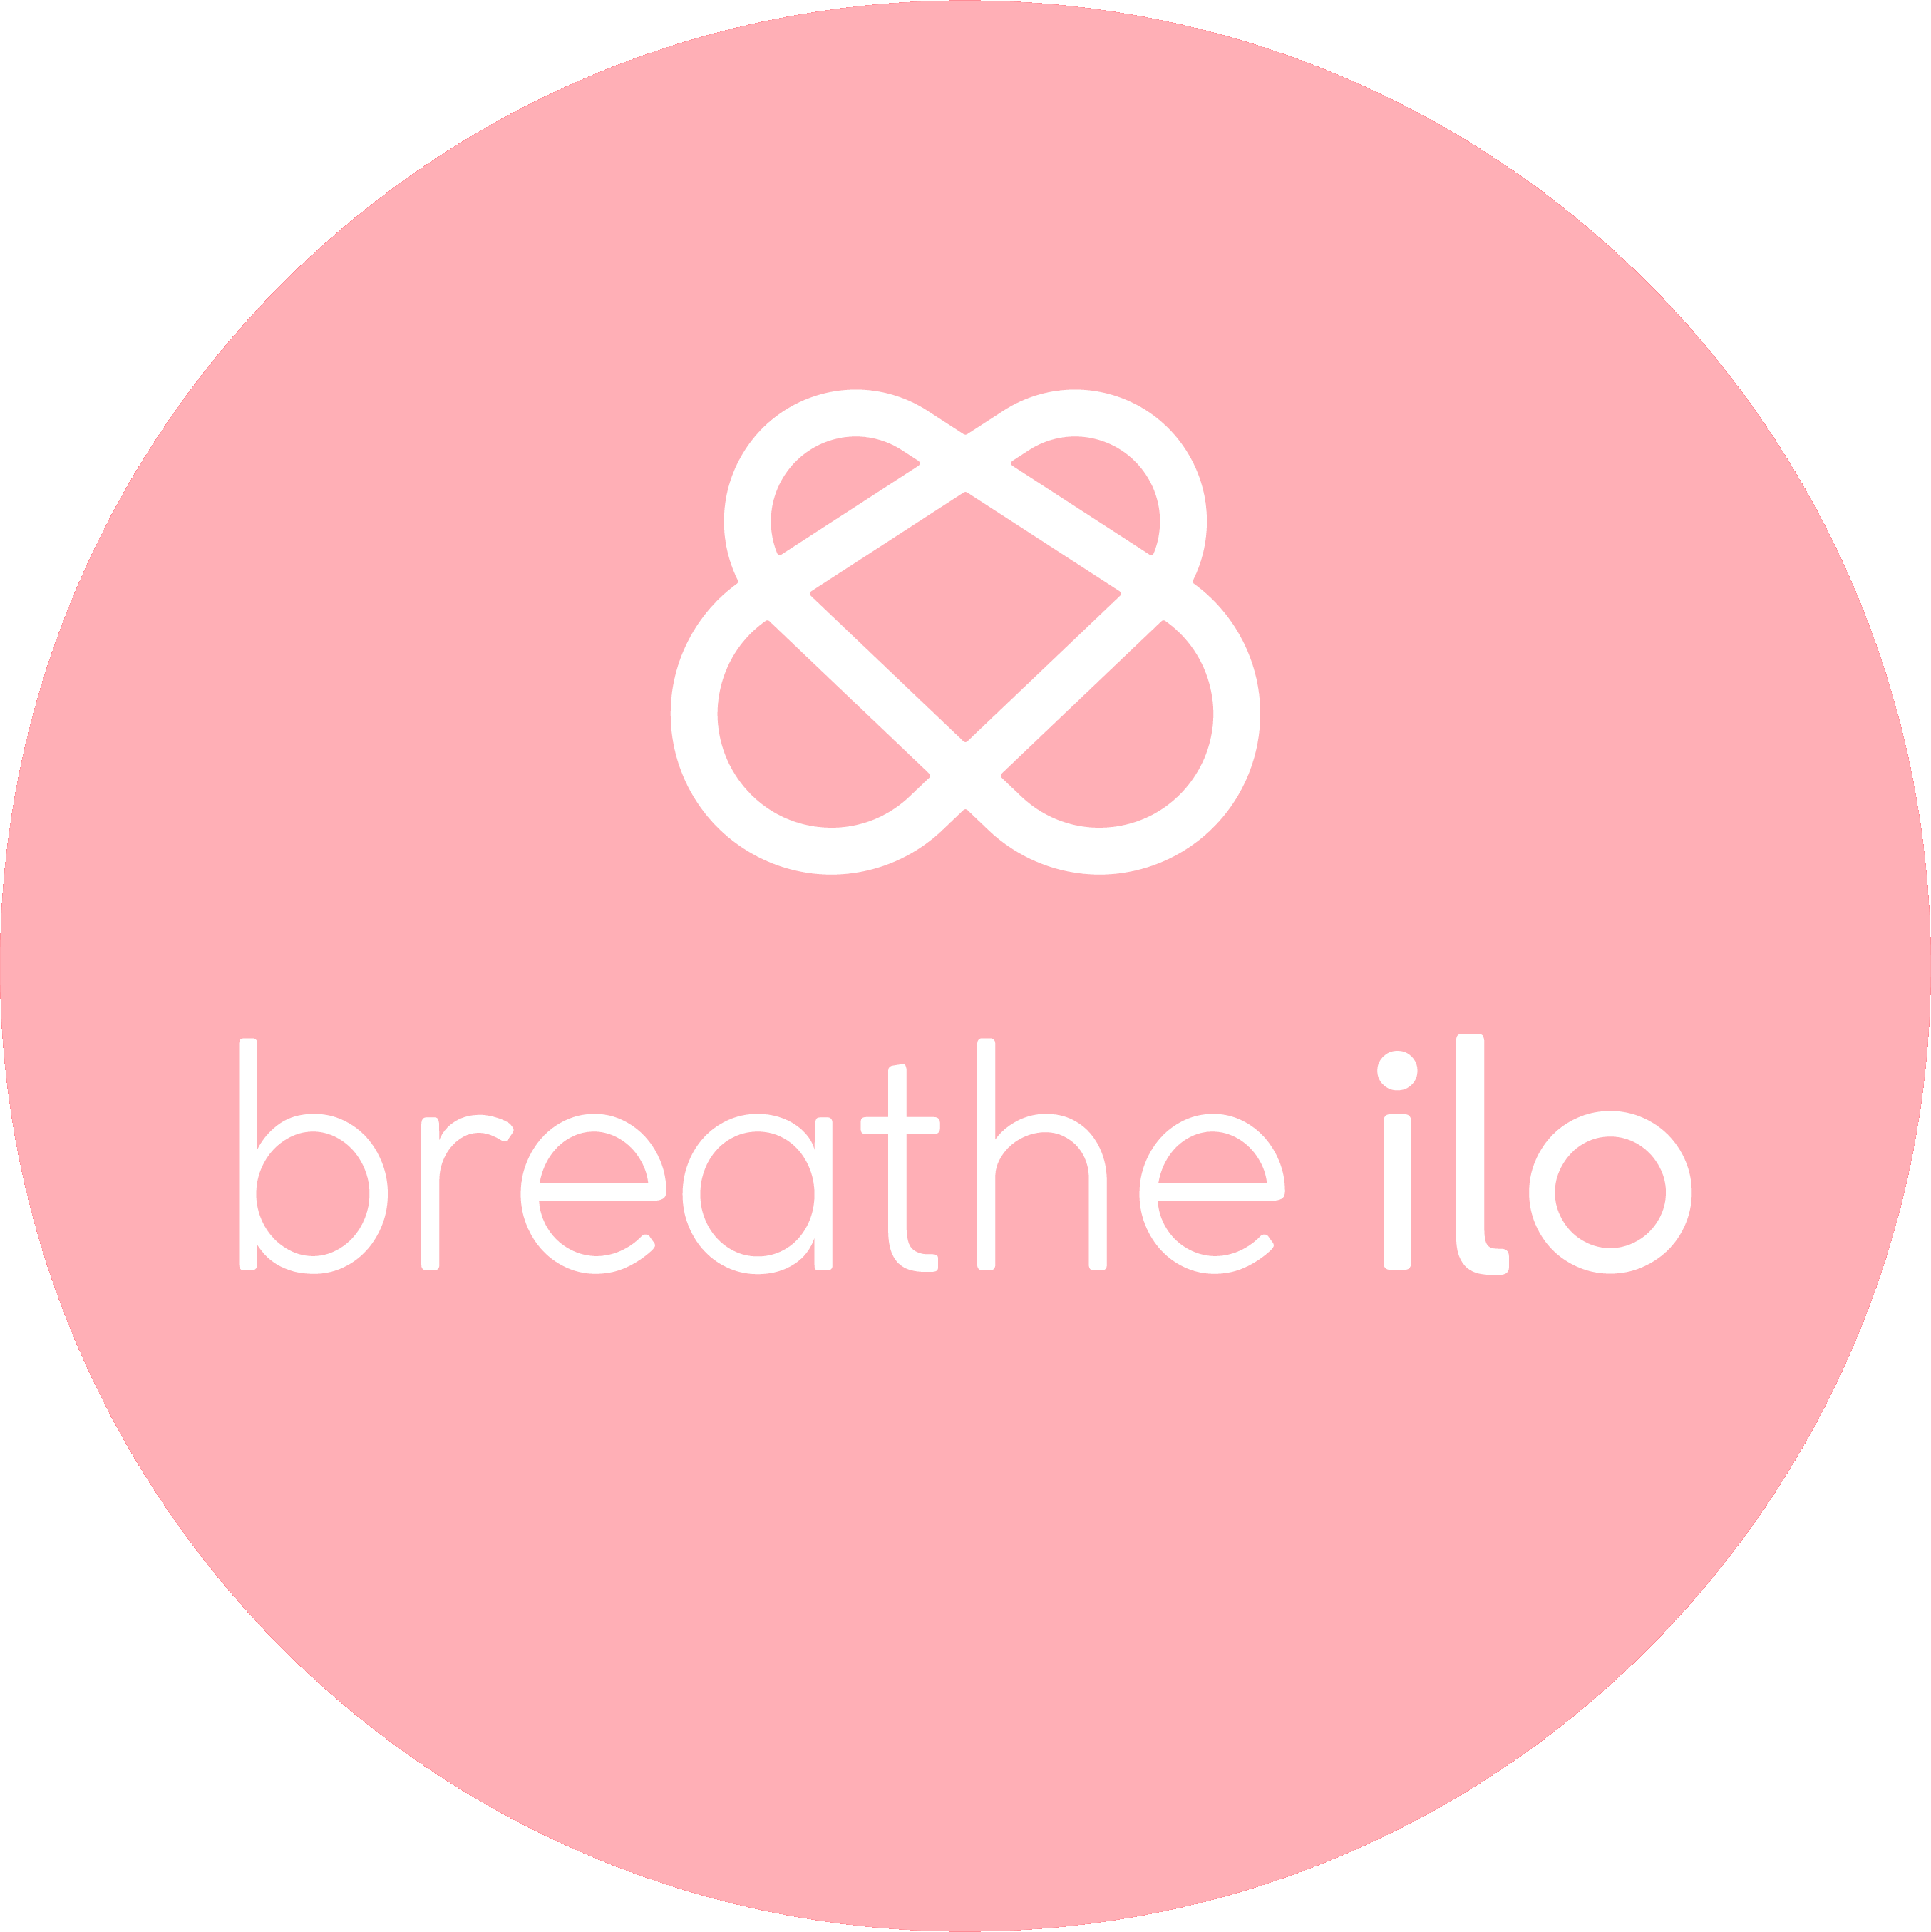 Breathe ilo Logo